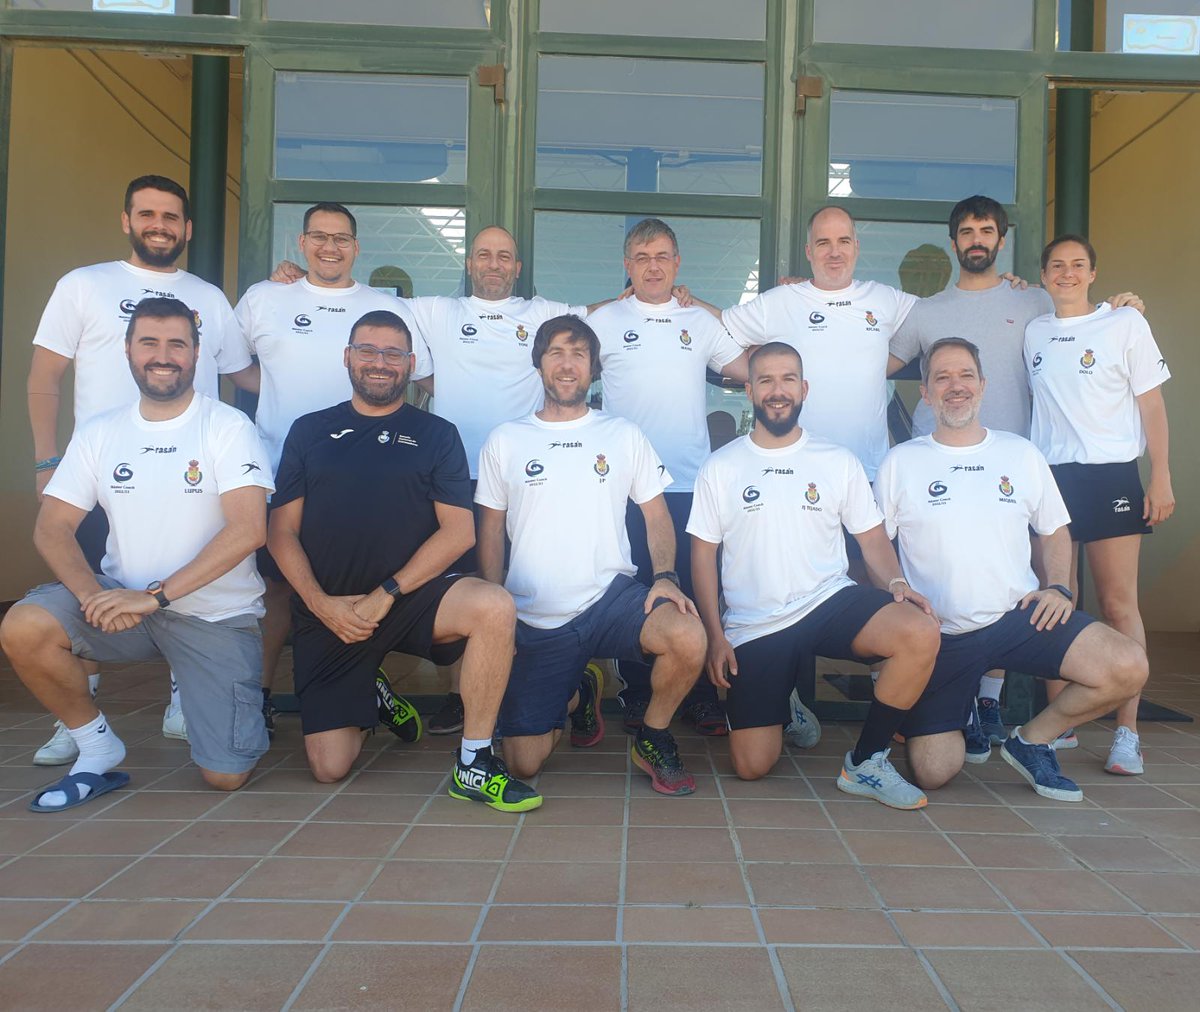 Ells són els entrenadors/es catalans/es que han assistit de forma presencial a Alcalà de Henares (Madrid) per realitzar la segona fase del Curs Master Coach 2022 👇